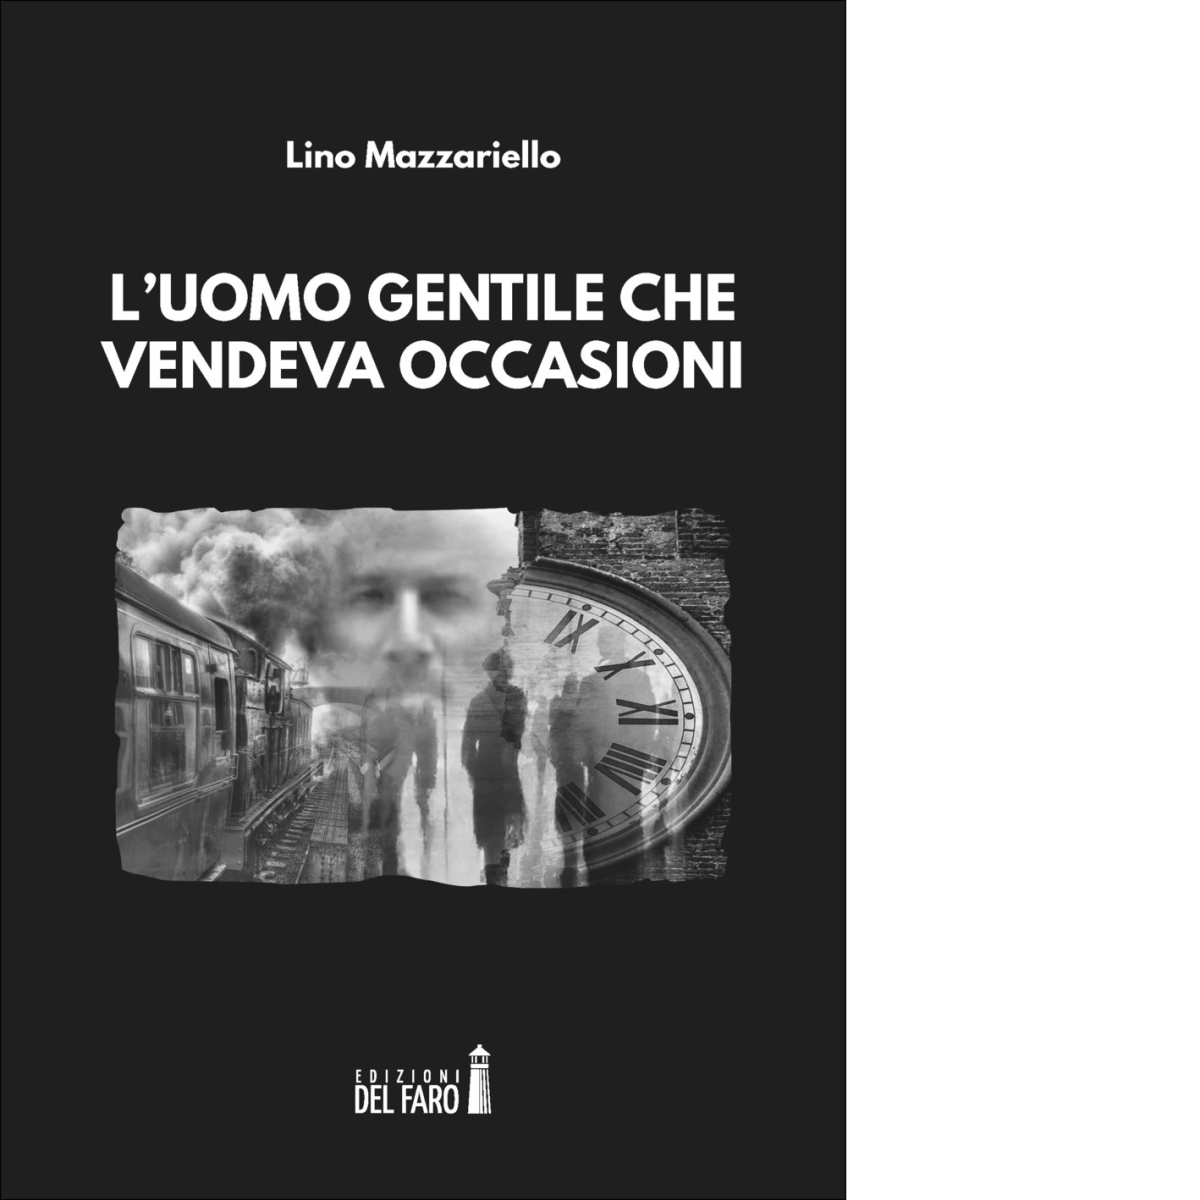 L' uomo gentile che vendeva occasioni di Lino Mazzariello - Del Faro, 2018 libro usato